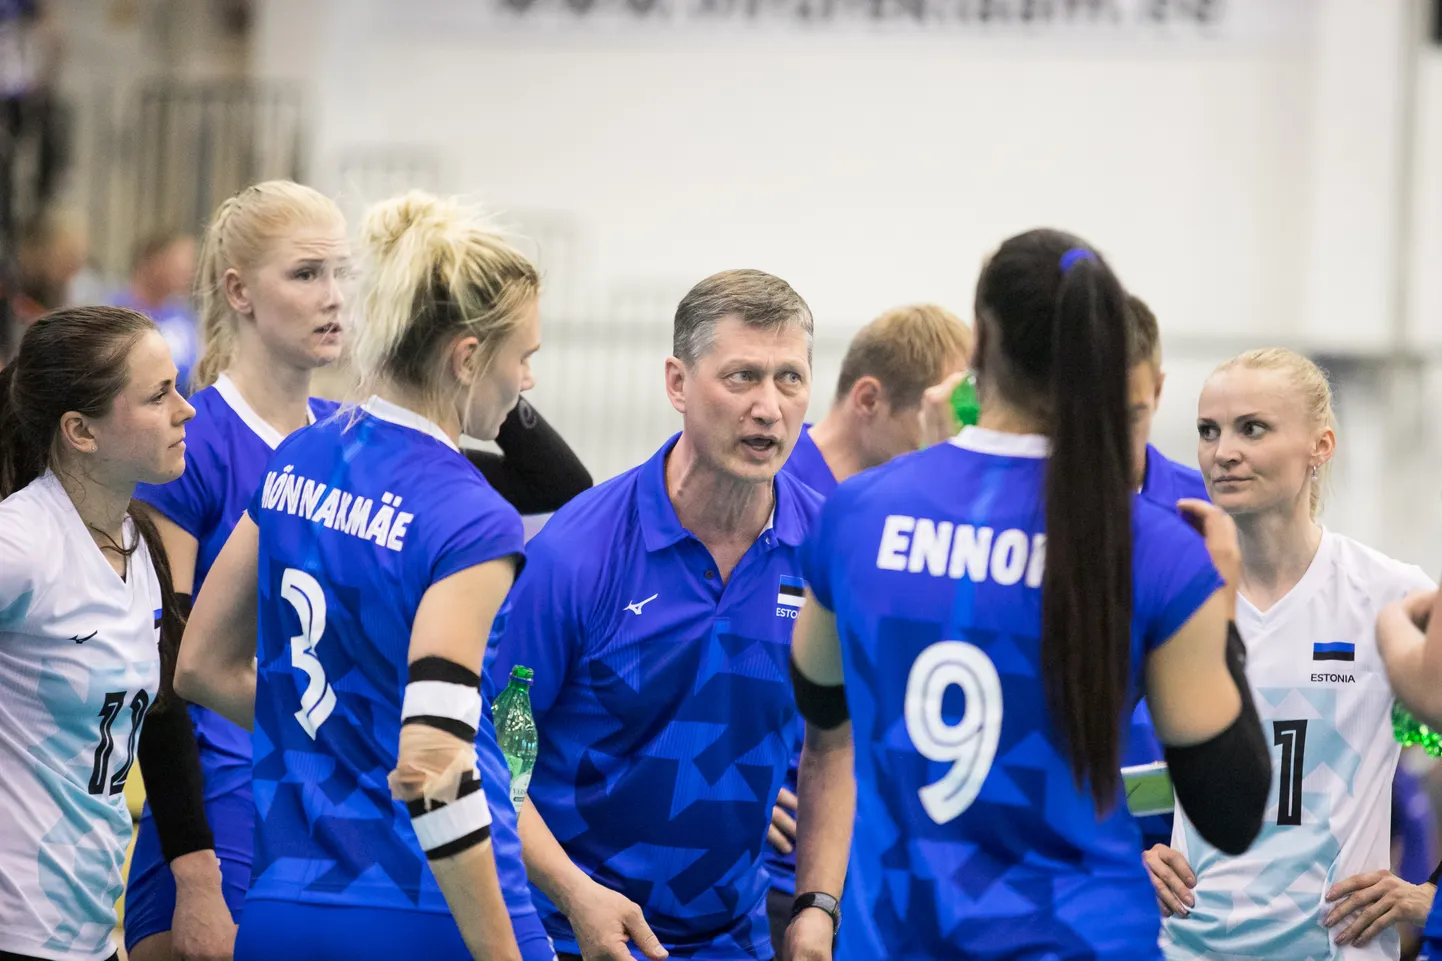 Edukas Eesti naiste võrkpallikoondis koos oma peatreeneri Andrei Ojametsaga.